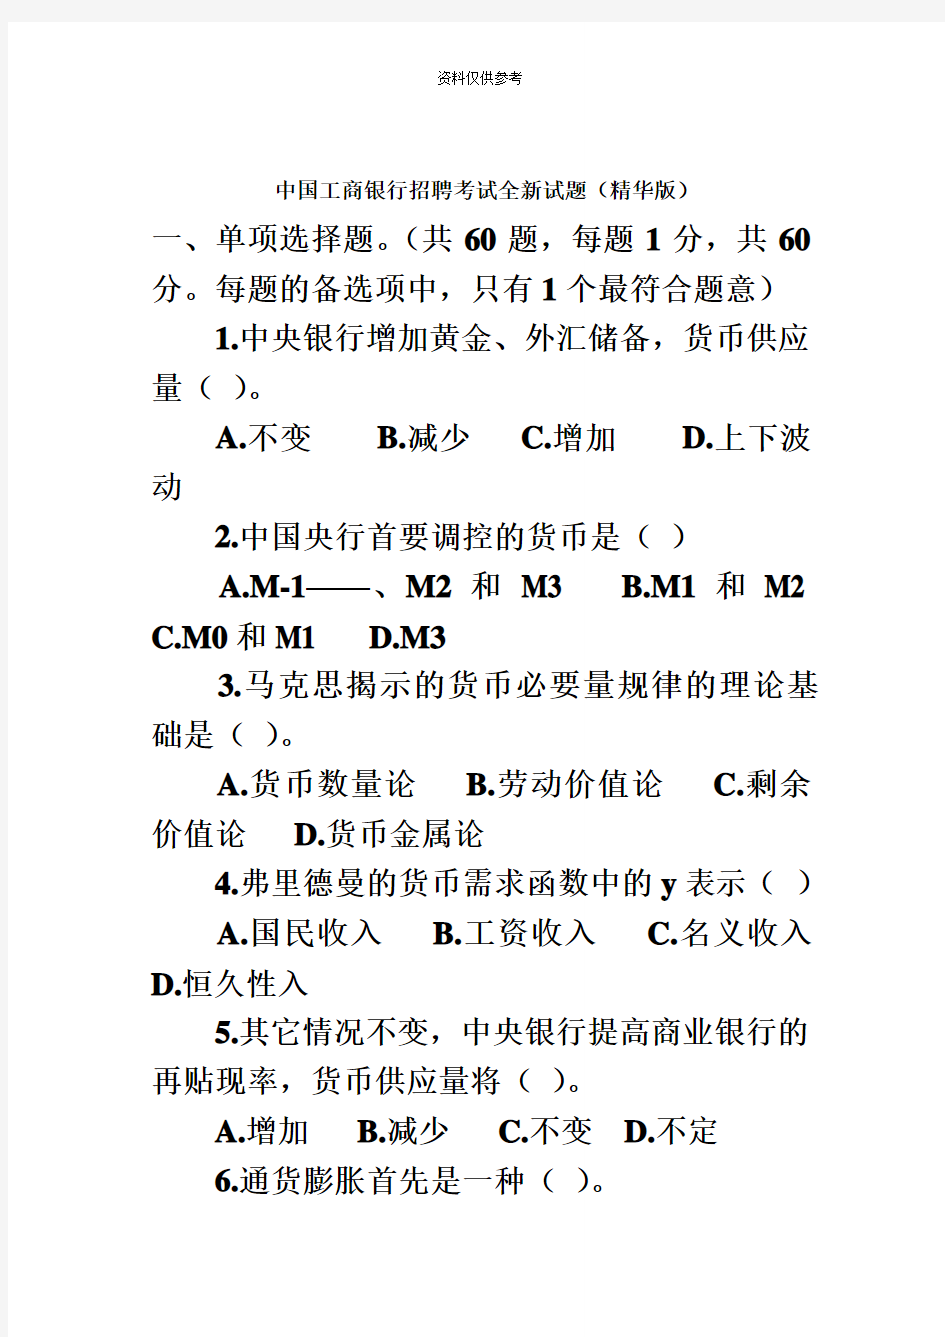 中国工商银行招聘考试全新试题完整版附有答案